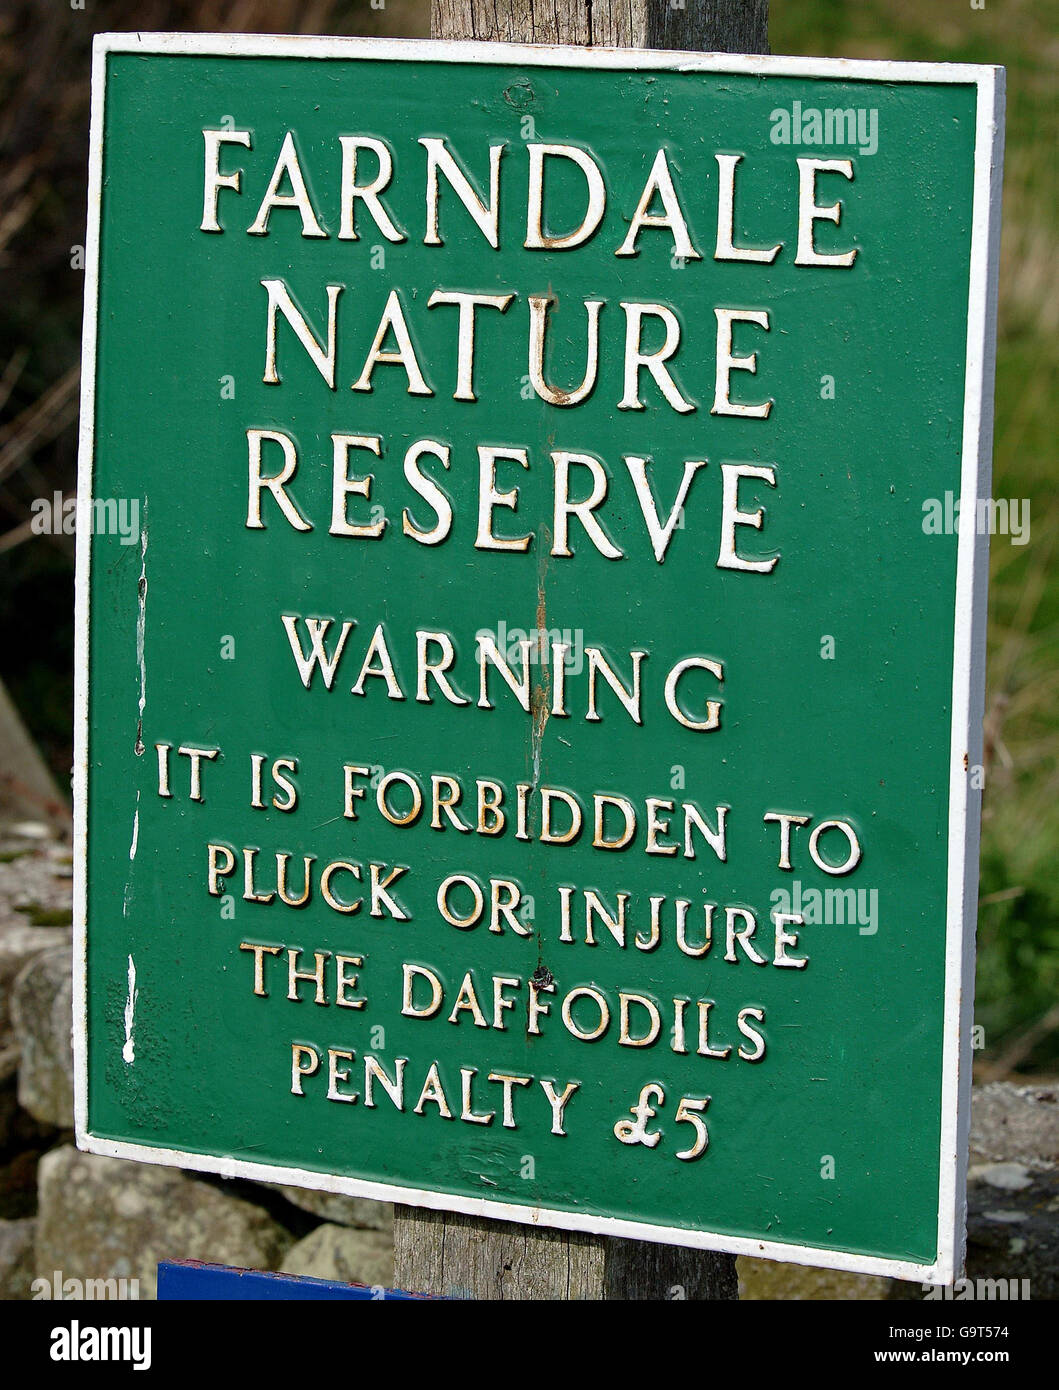 Uno dei segni più insoliti da vedere nella campagna britannica a Springtime, questo segno a Farndale nel North Yorkshire chiede alle migliaia di visitatori che visitano la famosa mostra di narcisi di non strappare o danneggiarli, o rischiano una multa di 5. Foto Stock